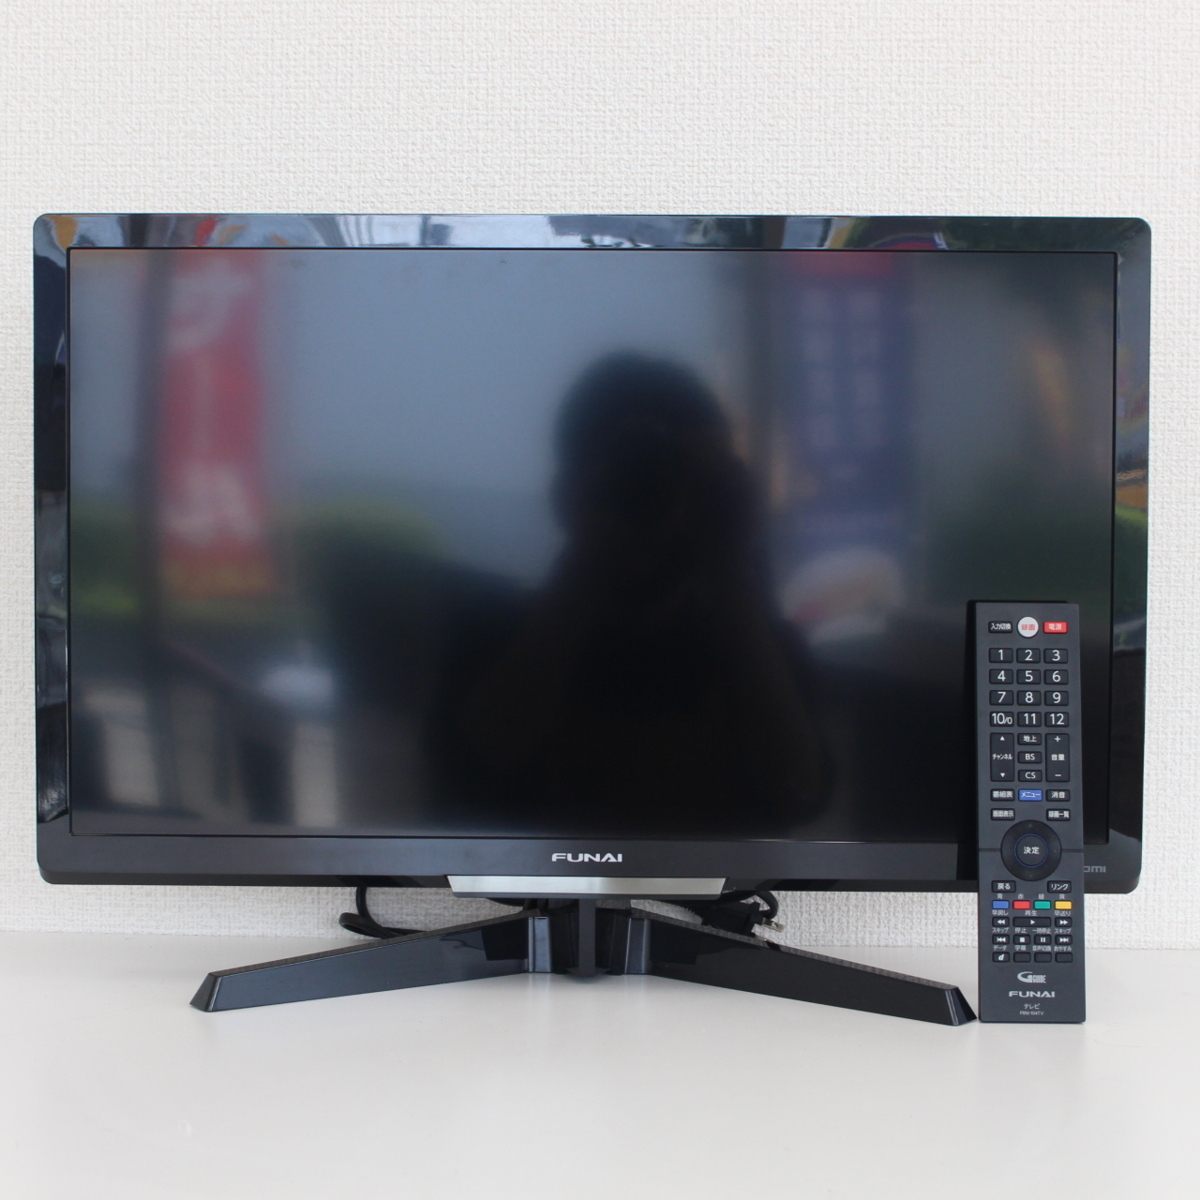 東京都大田区にて FUNAI 液晶テレビ FL-24H2010 2019年製 を出張買取させて頂きました。